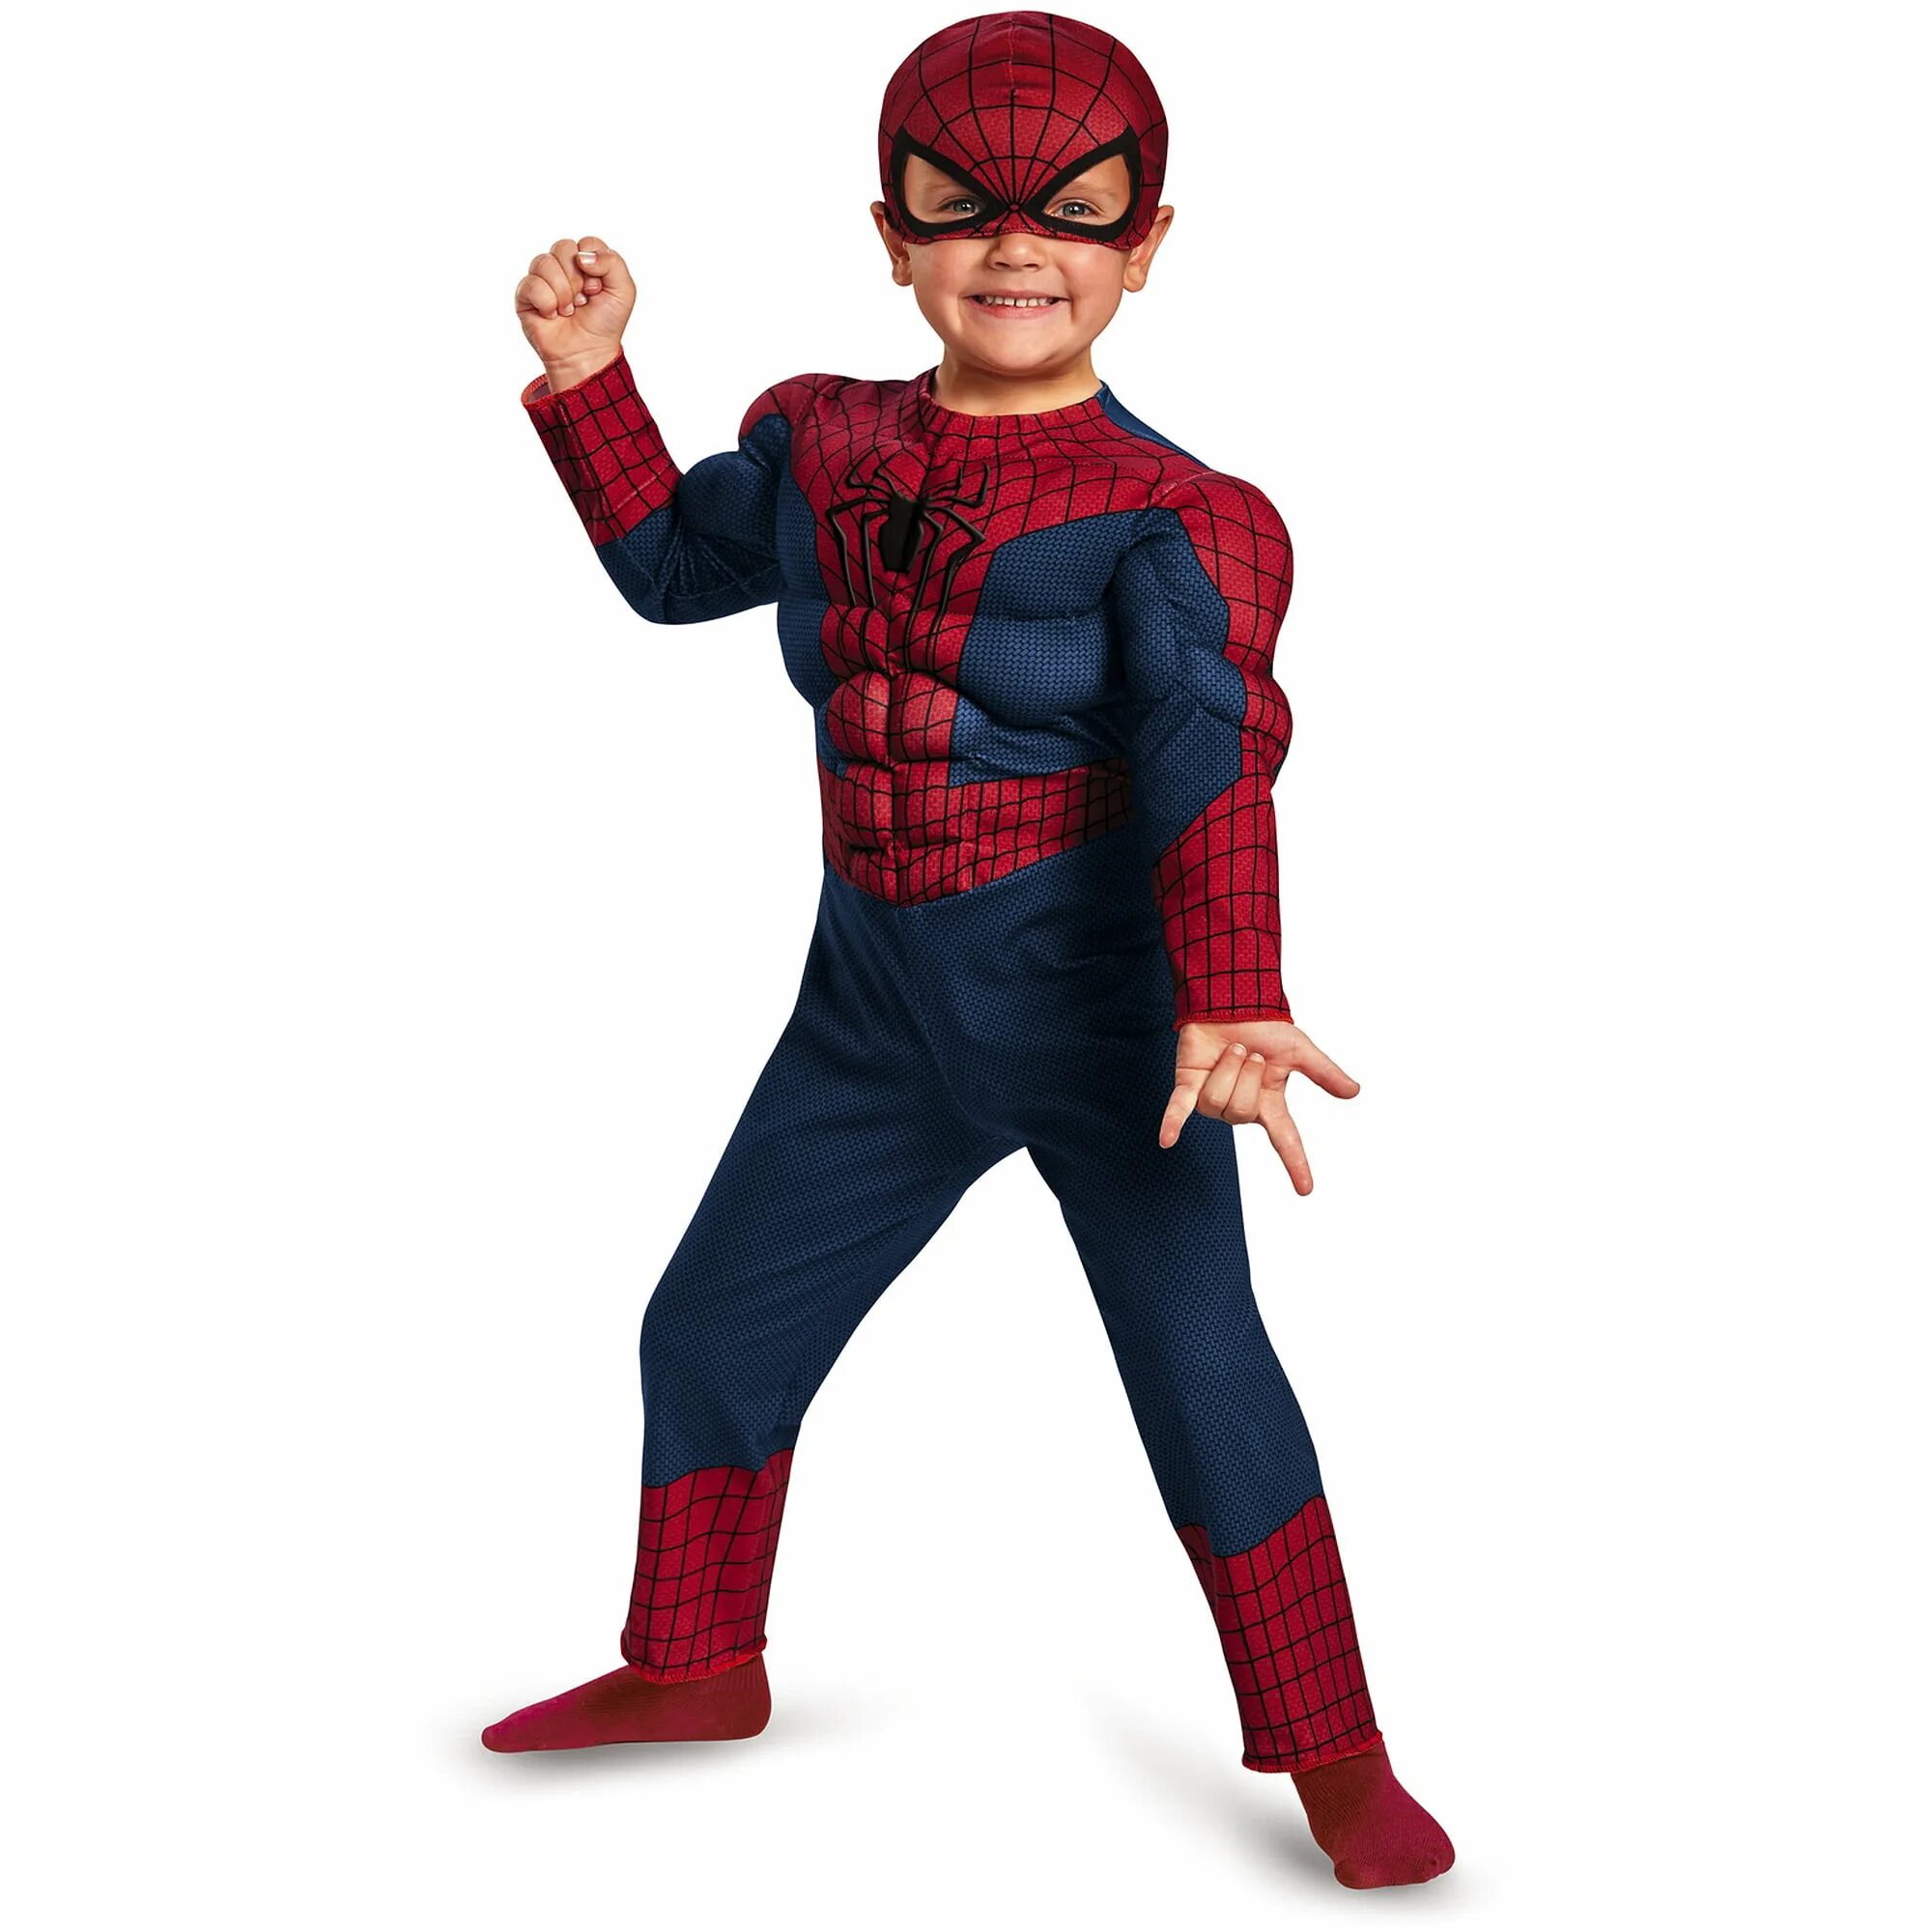 Карлик человек паук. Костюм костюм Спайдер Мэн. Человек паук для детей. Костюм человека паука детский. Костюм Спайдермена детский.